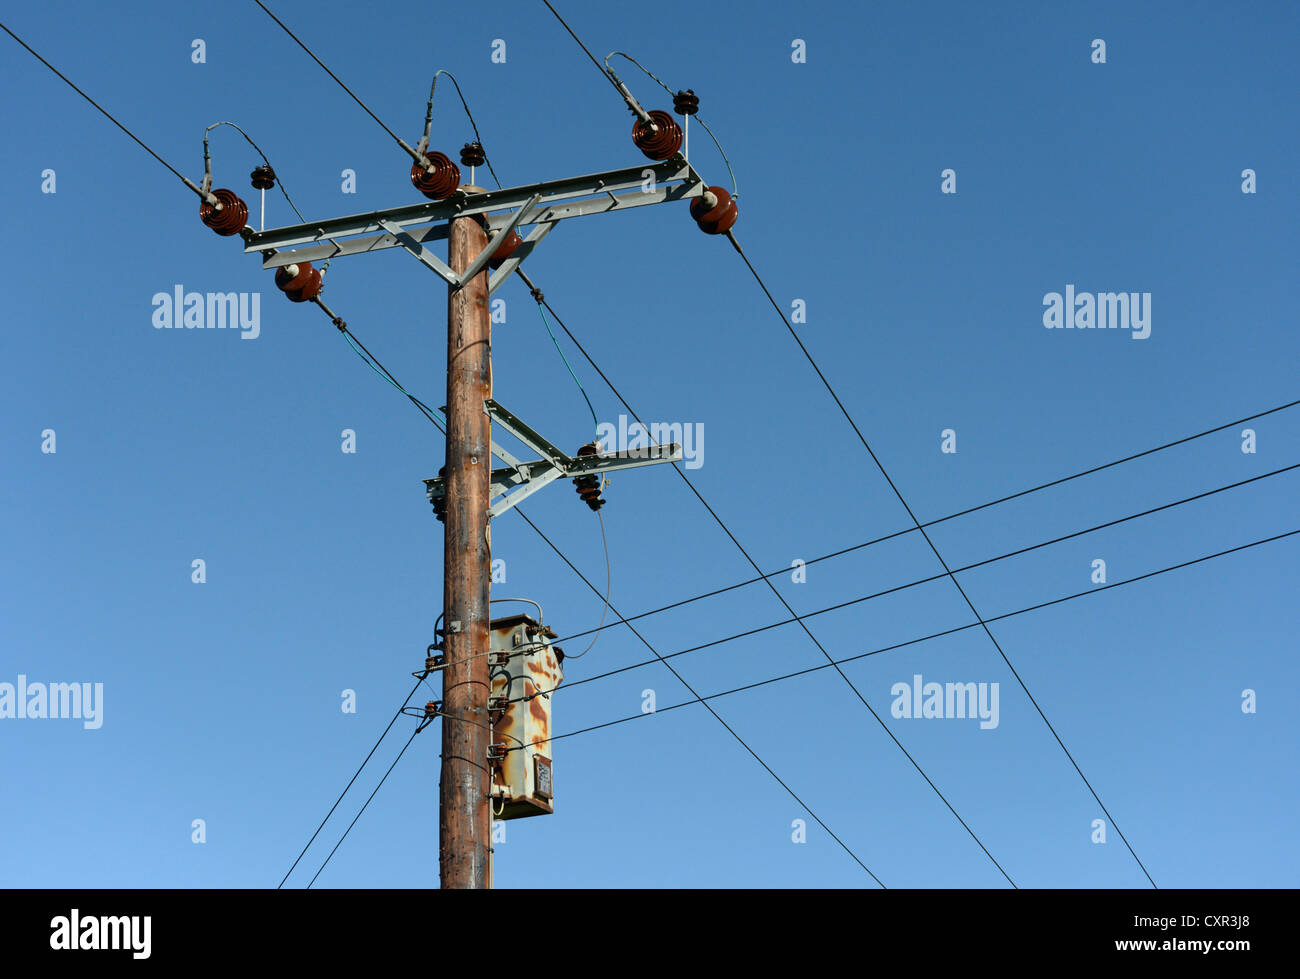 11 kV. elektrischen Leitungen und Transformatoren auf Holzstab. Ivegill, Cumbria, England, Vereinigtes Königreich, Europa. Stockfoto